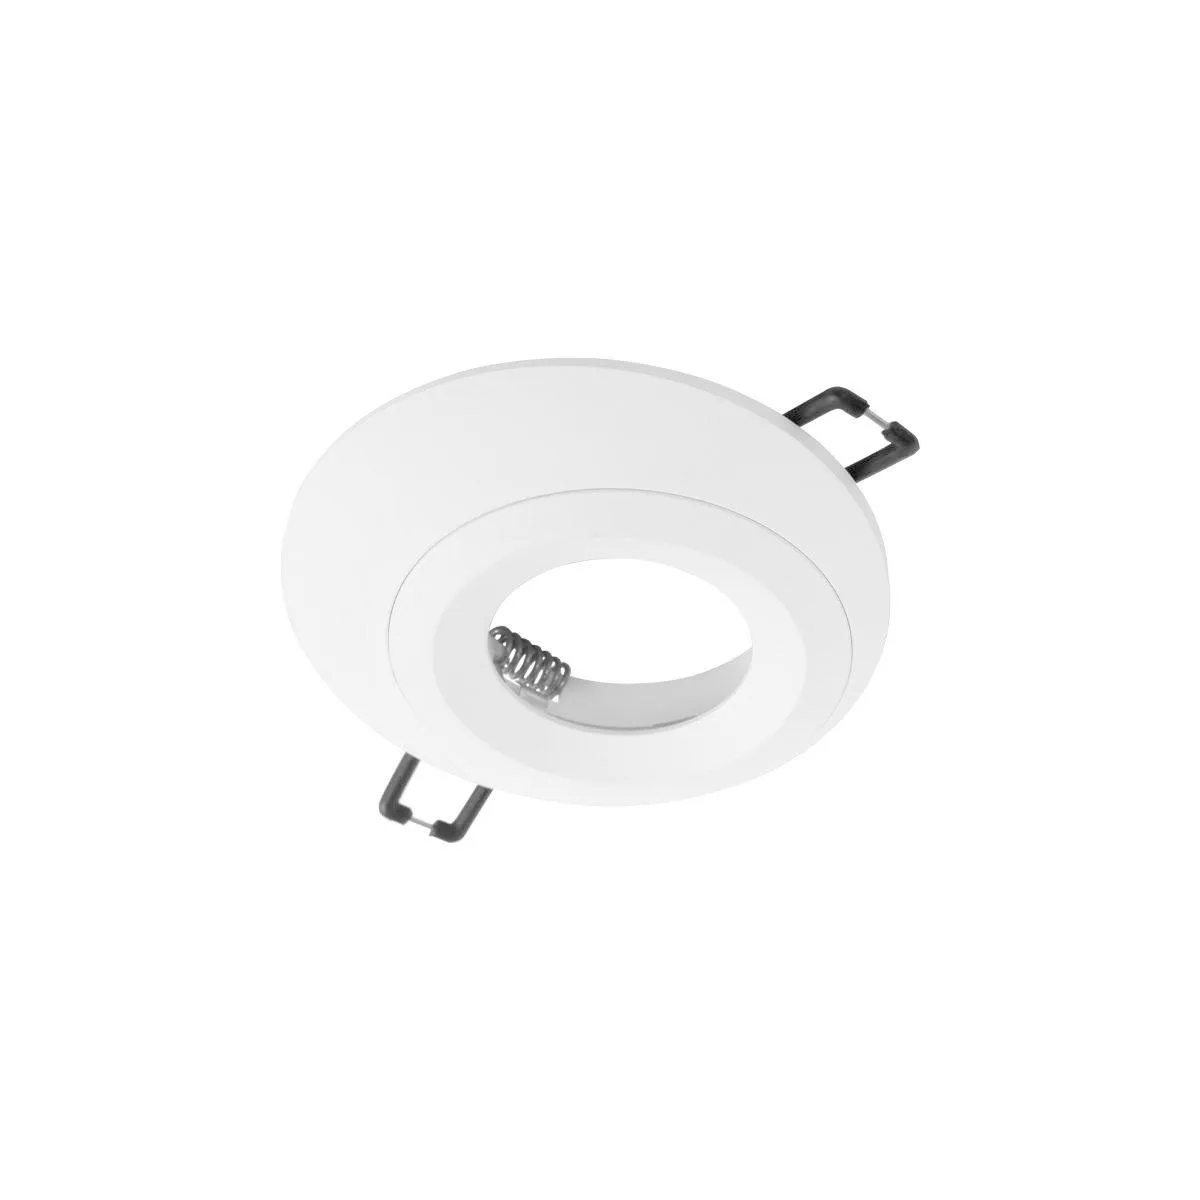 Точечный встраиваемый светильник Loft It Click 10339 White